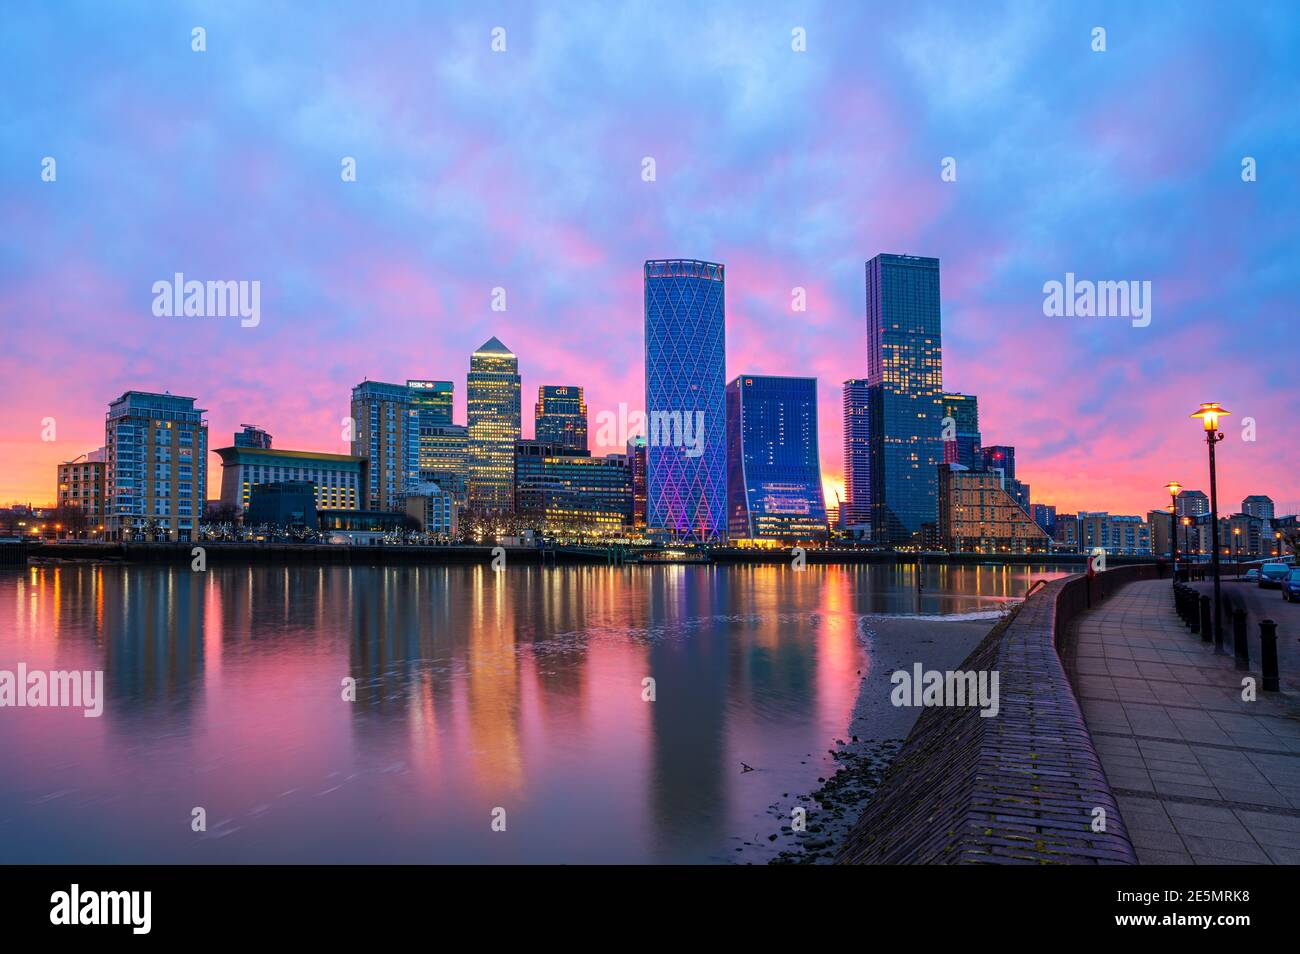 Londres, Angleterre, Royaume-Uni - 26 janvier 2021 : vue panoramique des bâtiments modernes du quartier financier de Canary Wharf et de la Tamise illuminés au soleil Banque D'Images